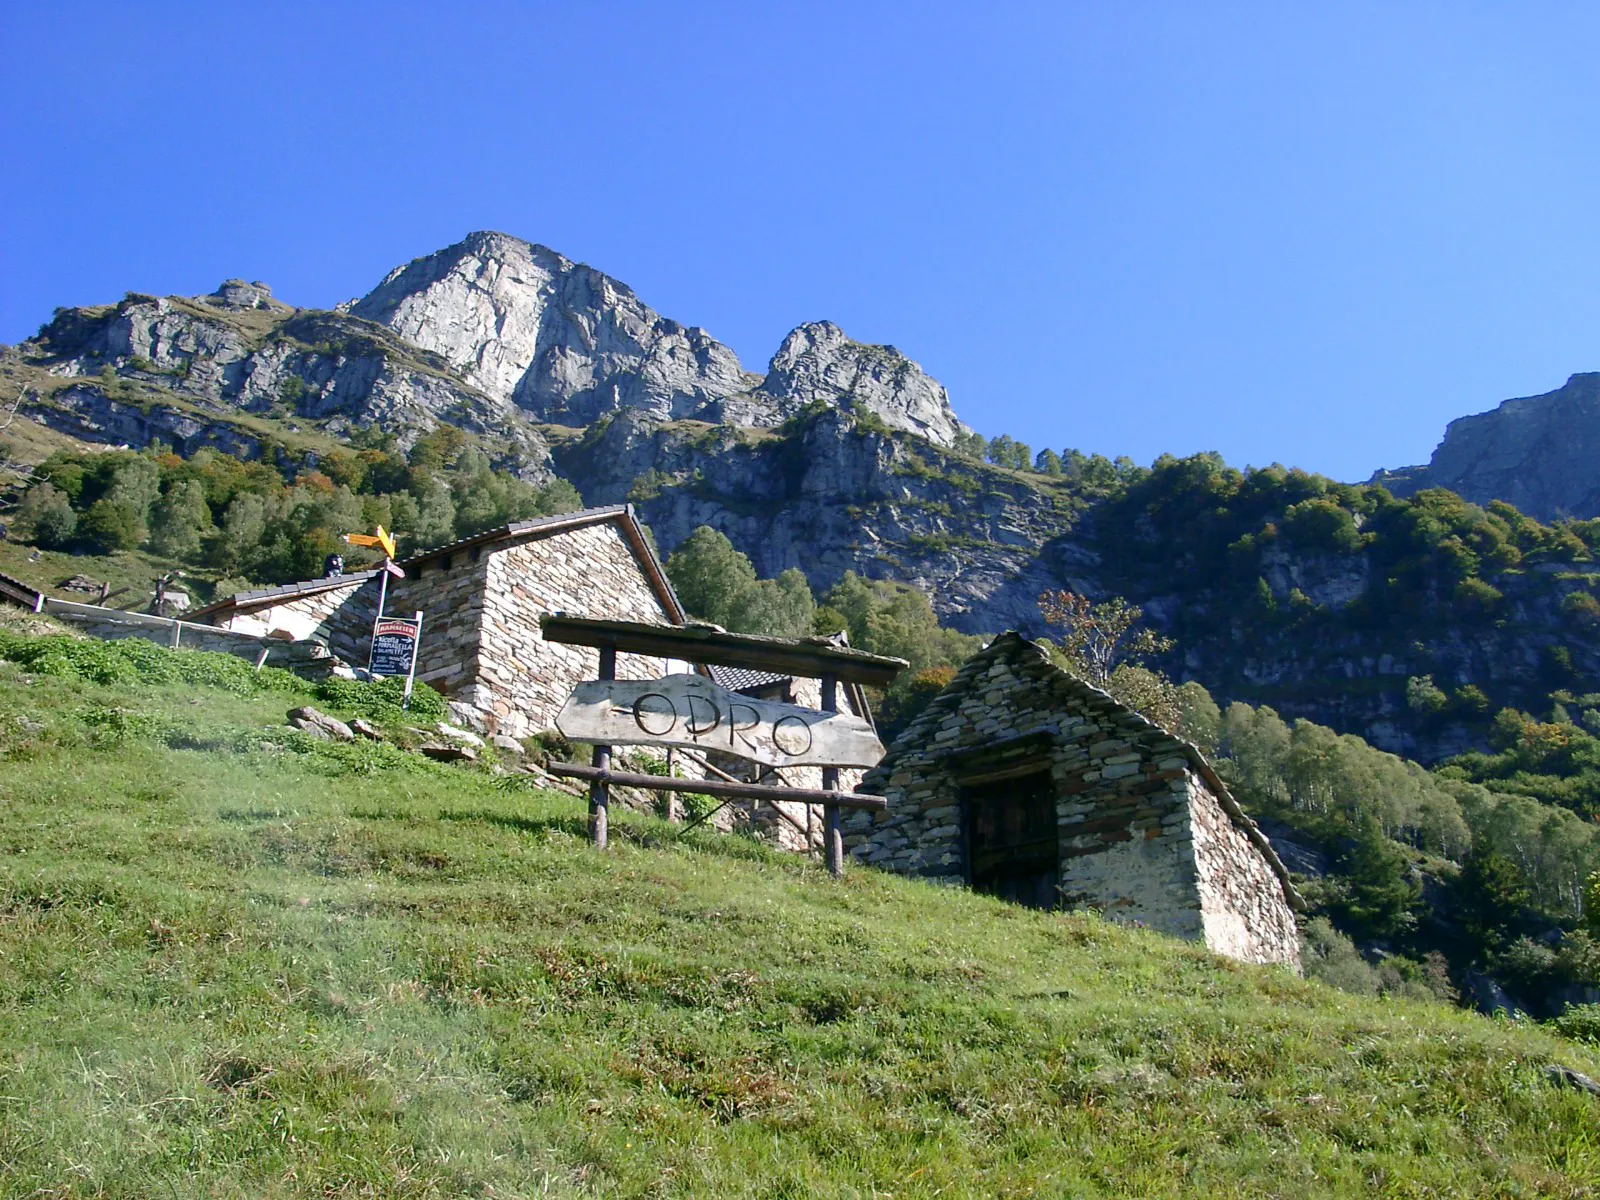 Photo showing: Blick zur Alp Odro. Odro ist eine Alp und Rustici-Siedlung (1240 m.ü.M.) oberhalb von Vogorno im Tessiner Valle Verzasca. Von Odro aus bietet sich ein atemberaubender Ausblick auf die Tessinerberge und auf einen Teil des Lago Maggiore.